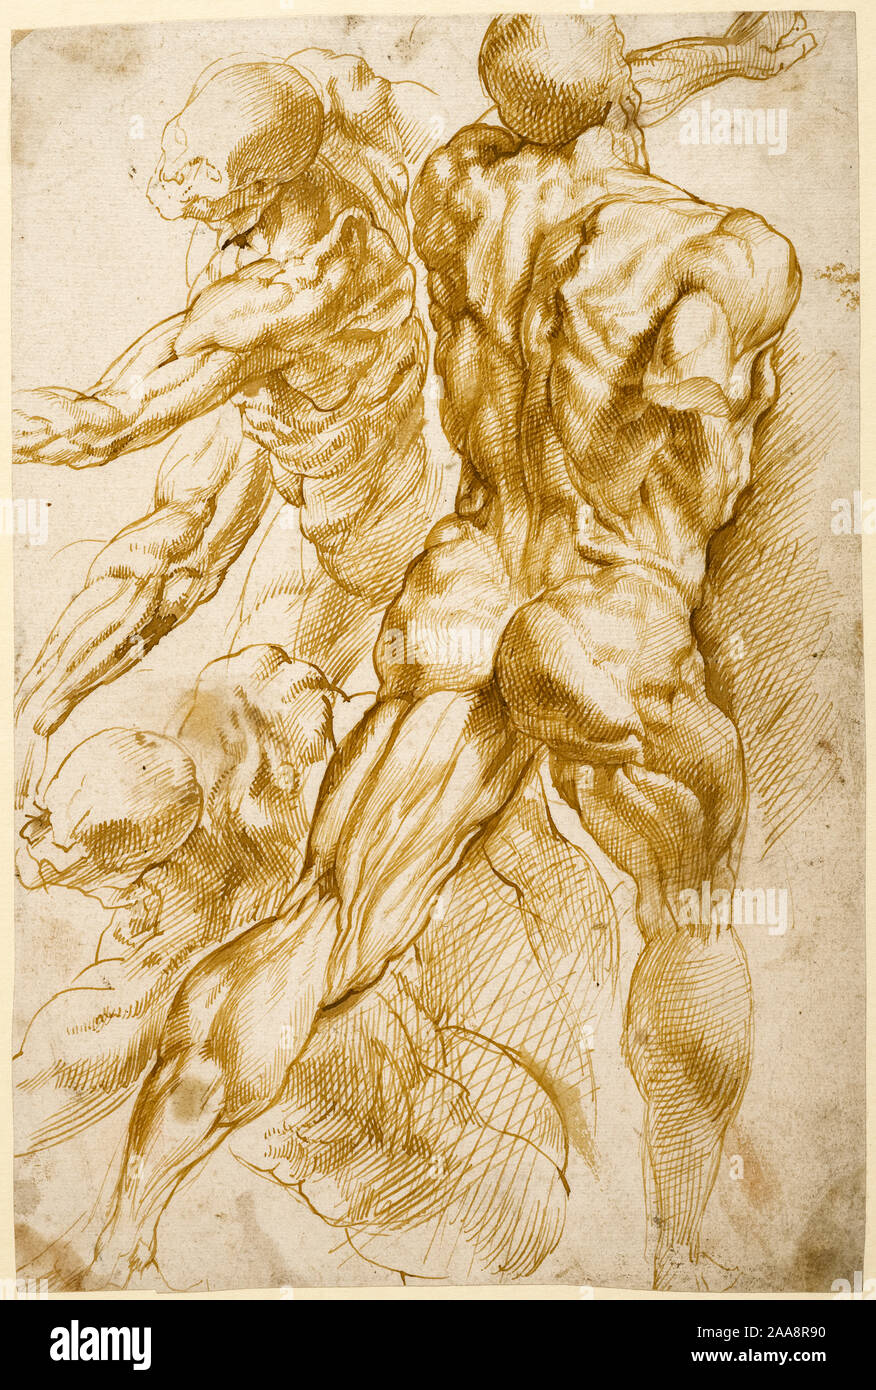 Peter Paul Rubens, anatomische Studien, Zeichnung, 1600-1605 Stockfoto